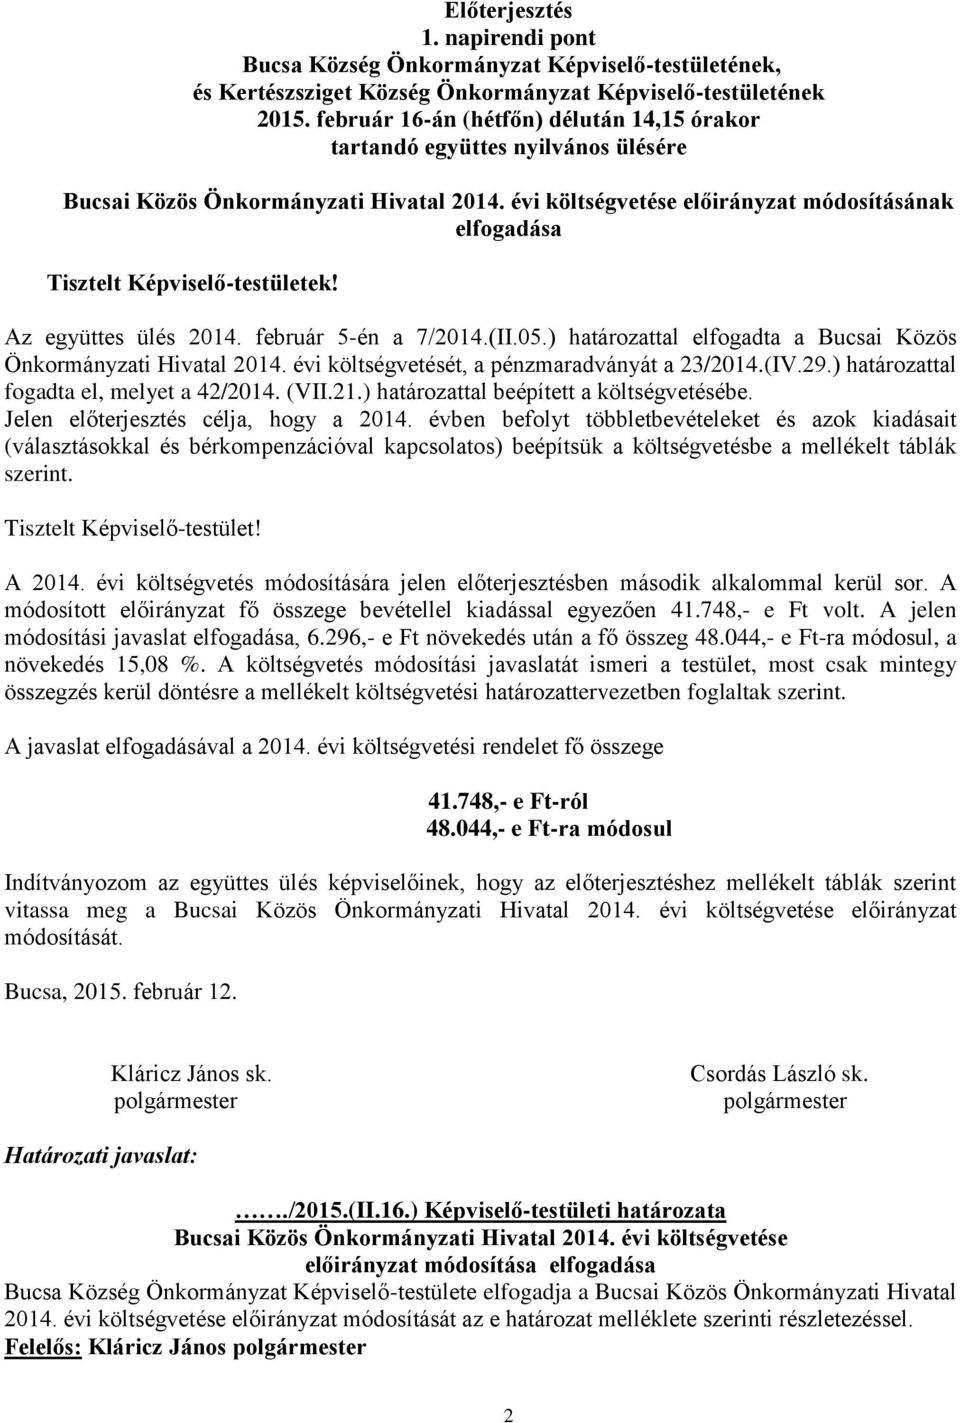 Az együttes ülés 2014. február 5-én a 7/2014.(II.05.) határozattal elfogadta a Bucsai Közös Önkormányzati Hivatal 2014. évi költségvetését, a pénzmaradványát a 23/2014.(IV.29.